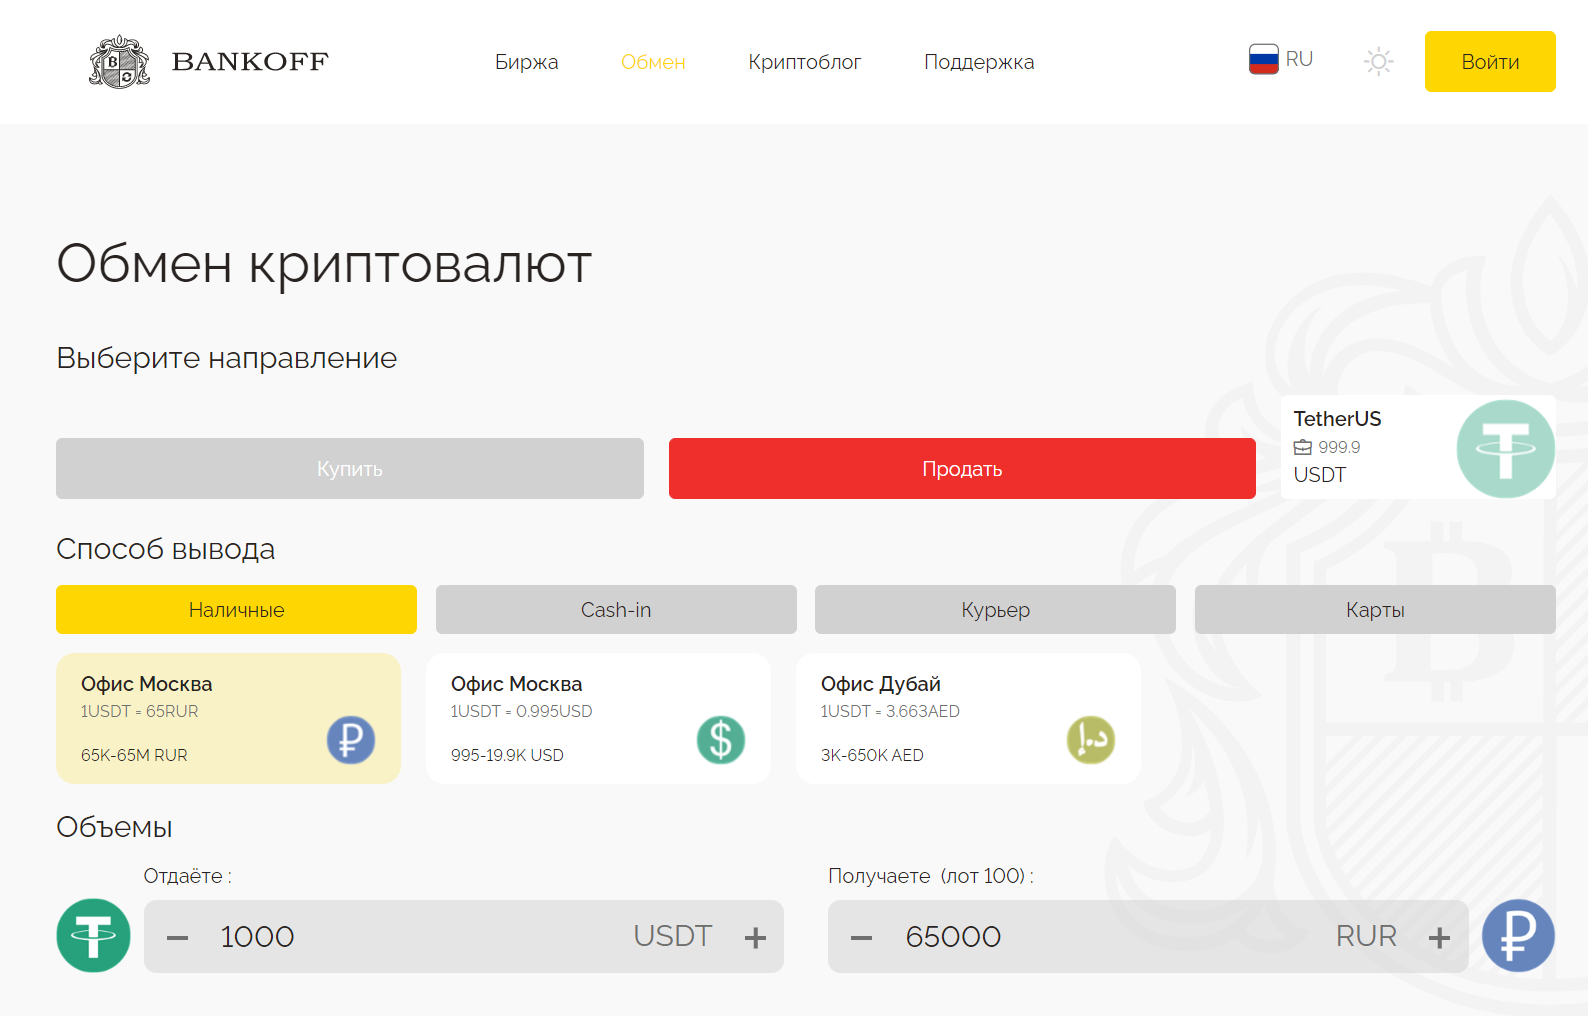 BANKOFF: криптобиржа и обменник с офисами в России и ОАЭ - Біти медіа